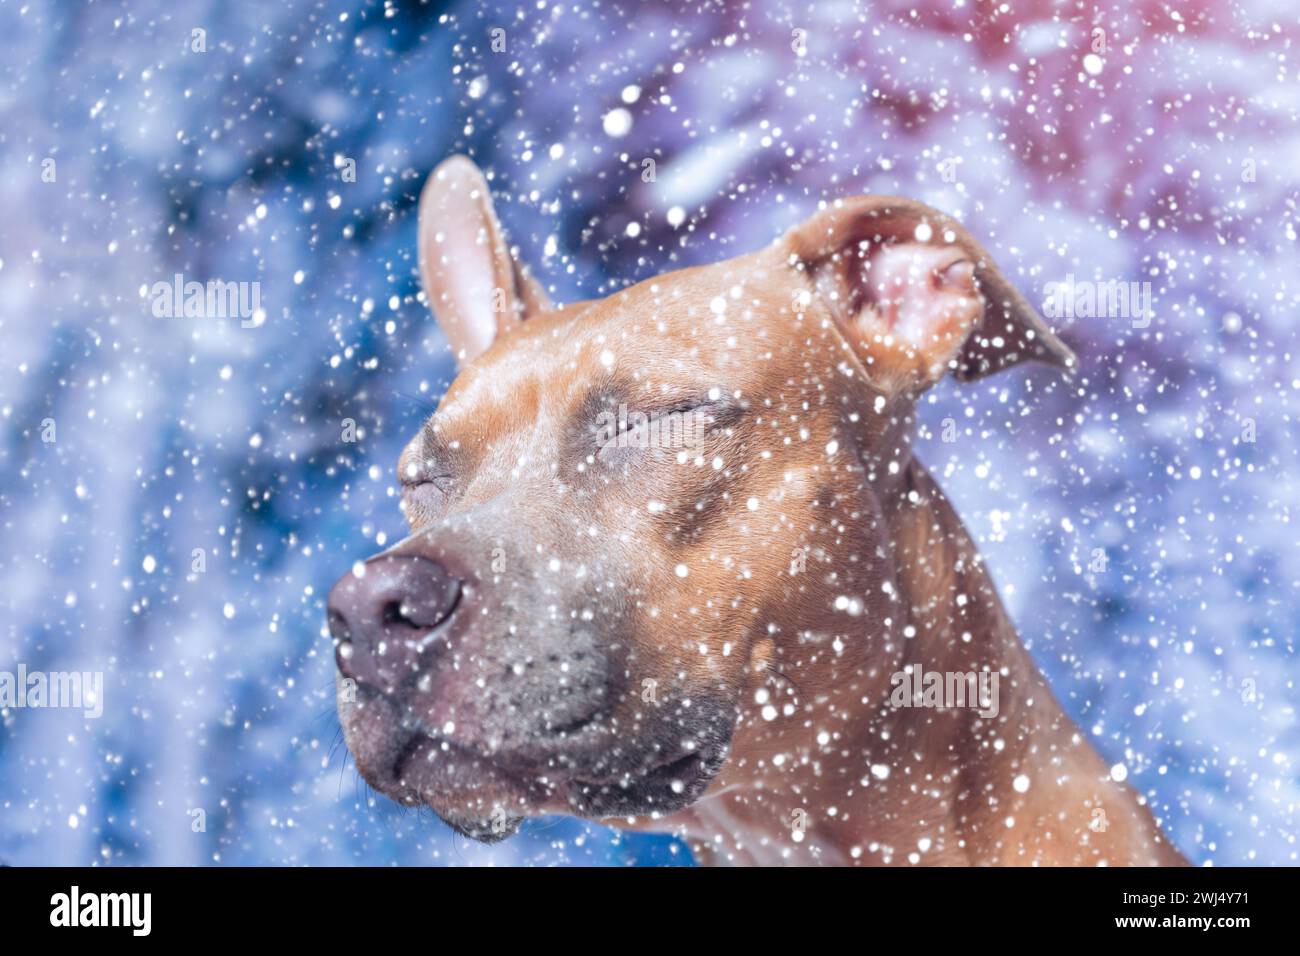 Der rothaarige, glatthaarige Staffordshire Terrier Hund blinzelte und wandte sich vom Schnee ab Stockfoto